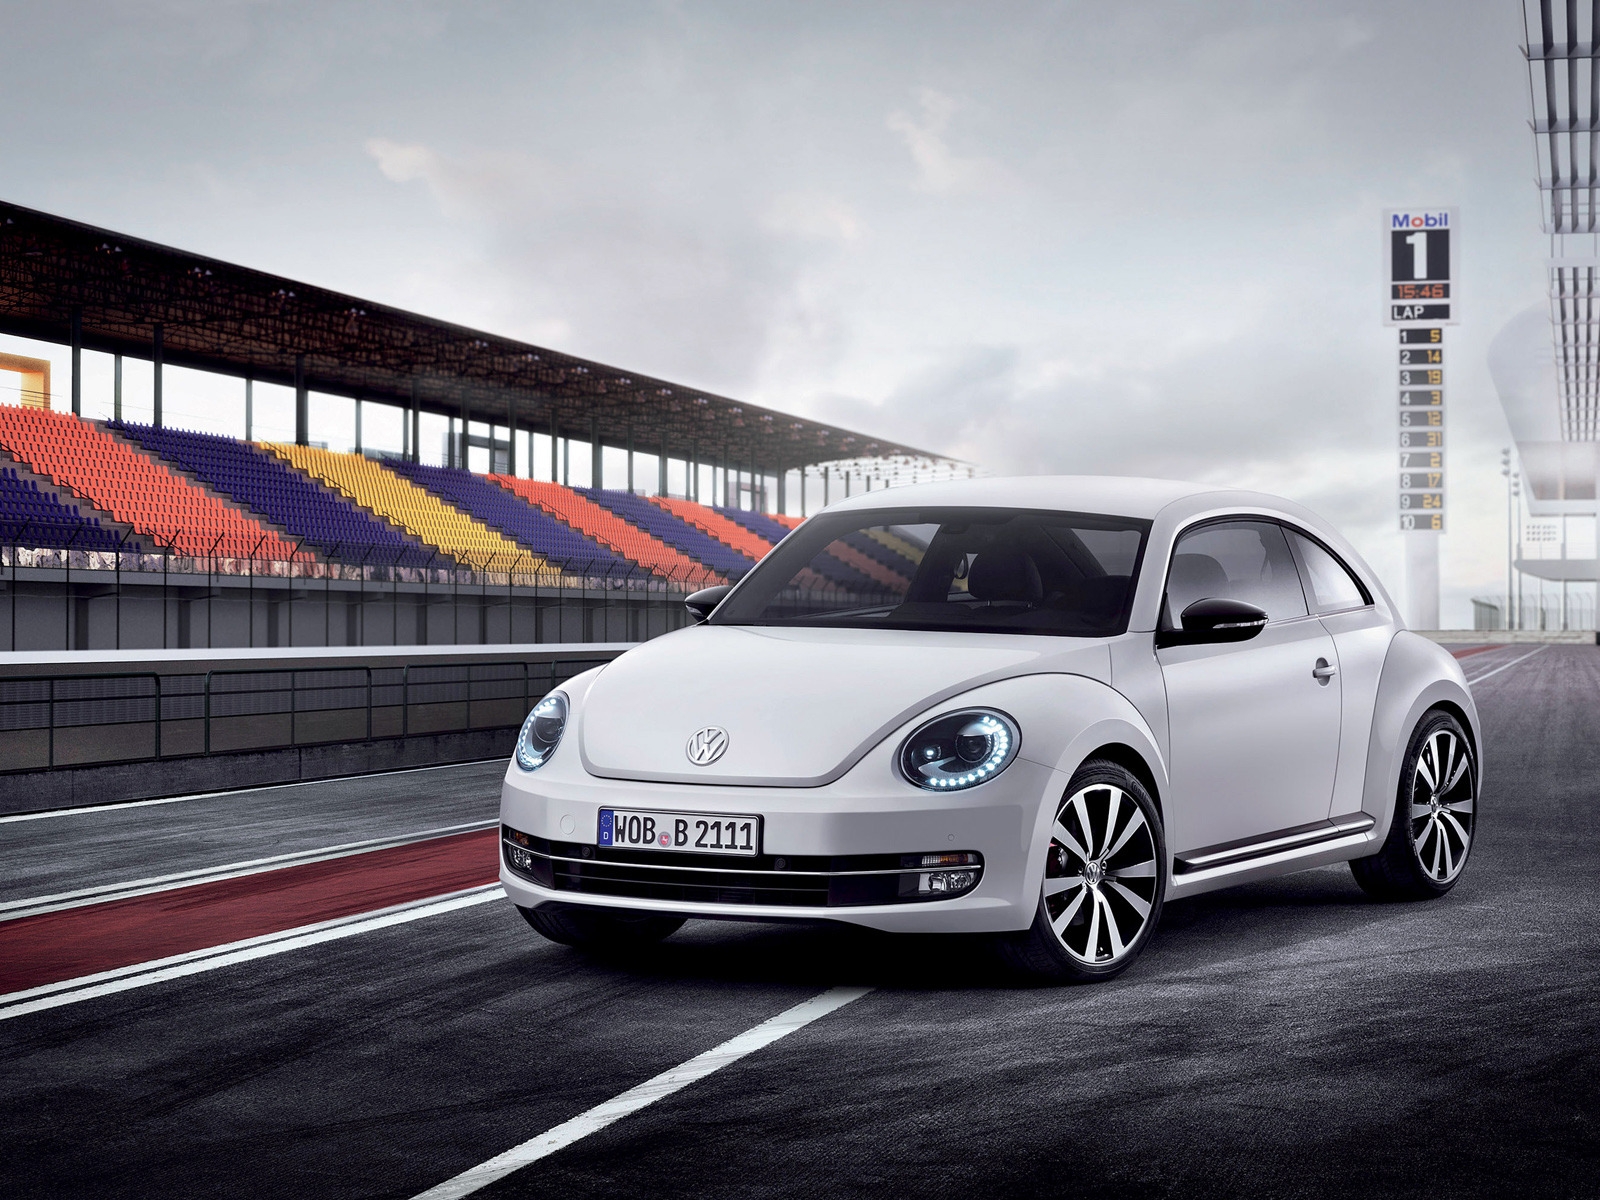 Volkswagen Beetle 2012 for 1600 x 1200 resolution